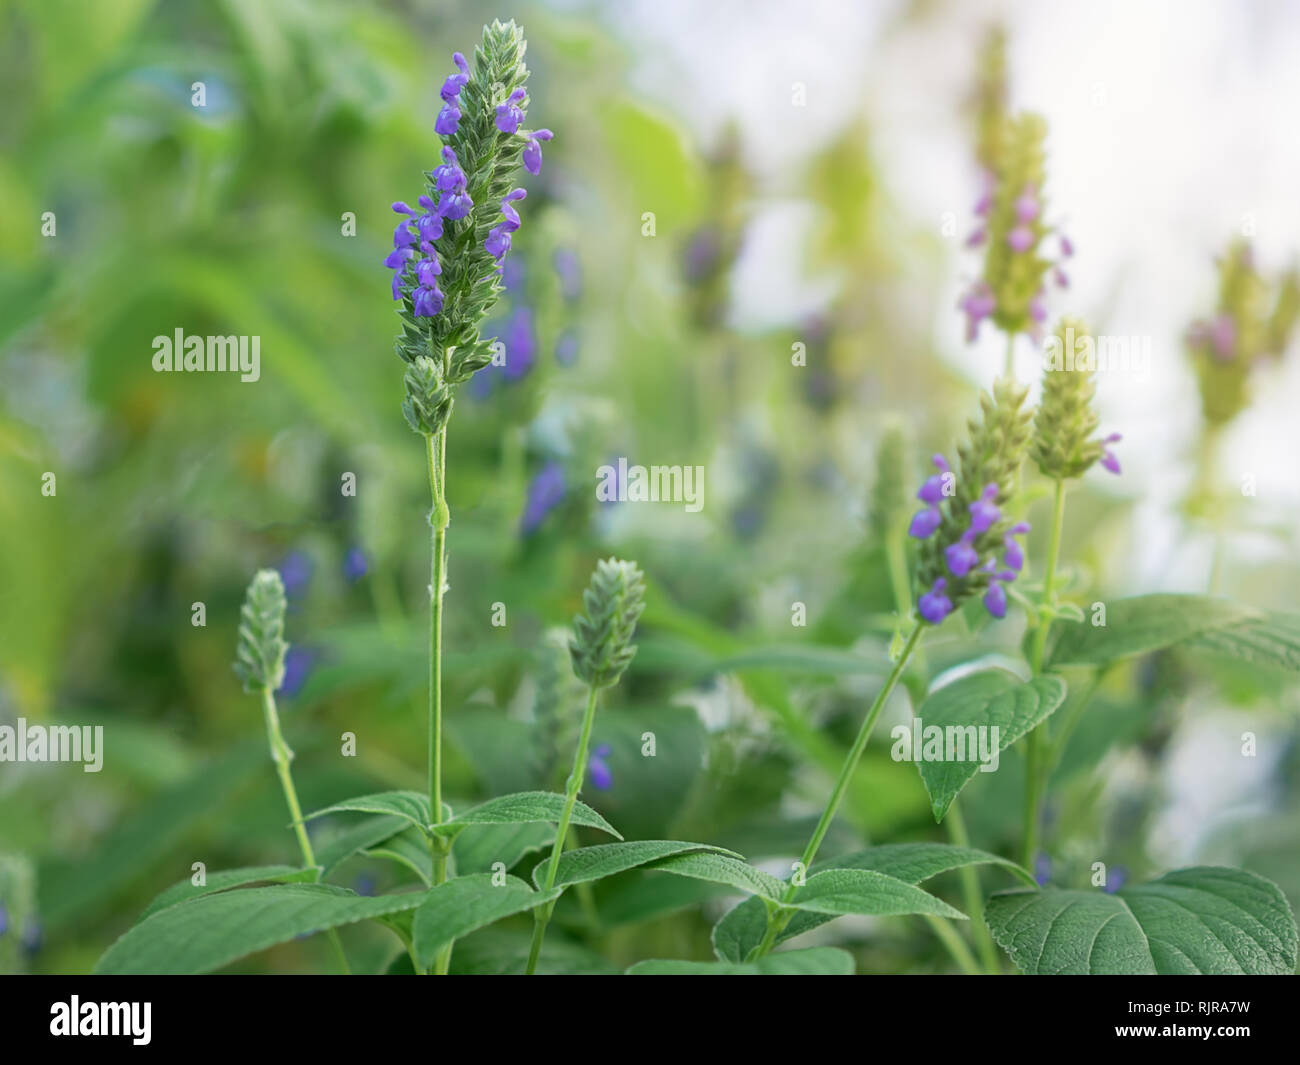 Salvia hispanica fleurs, connu sous le nom de Chia, une usine d'aliments sains avec des fleurs violettes de la famille des menthes, Lamiaceae jardin en croissant Banque D'Images